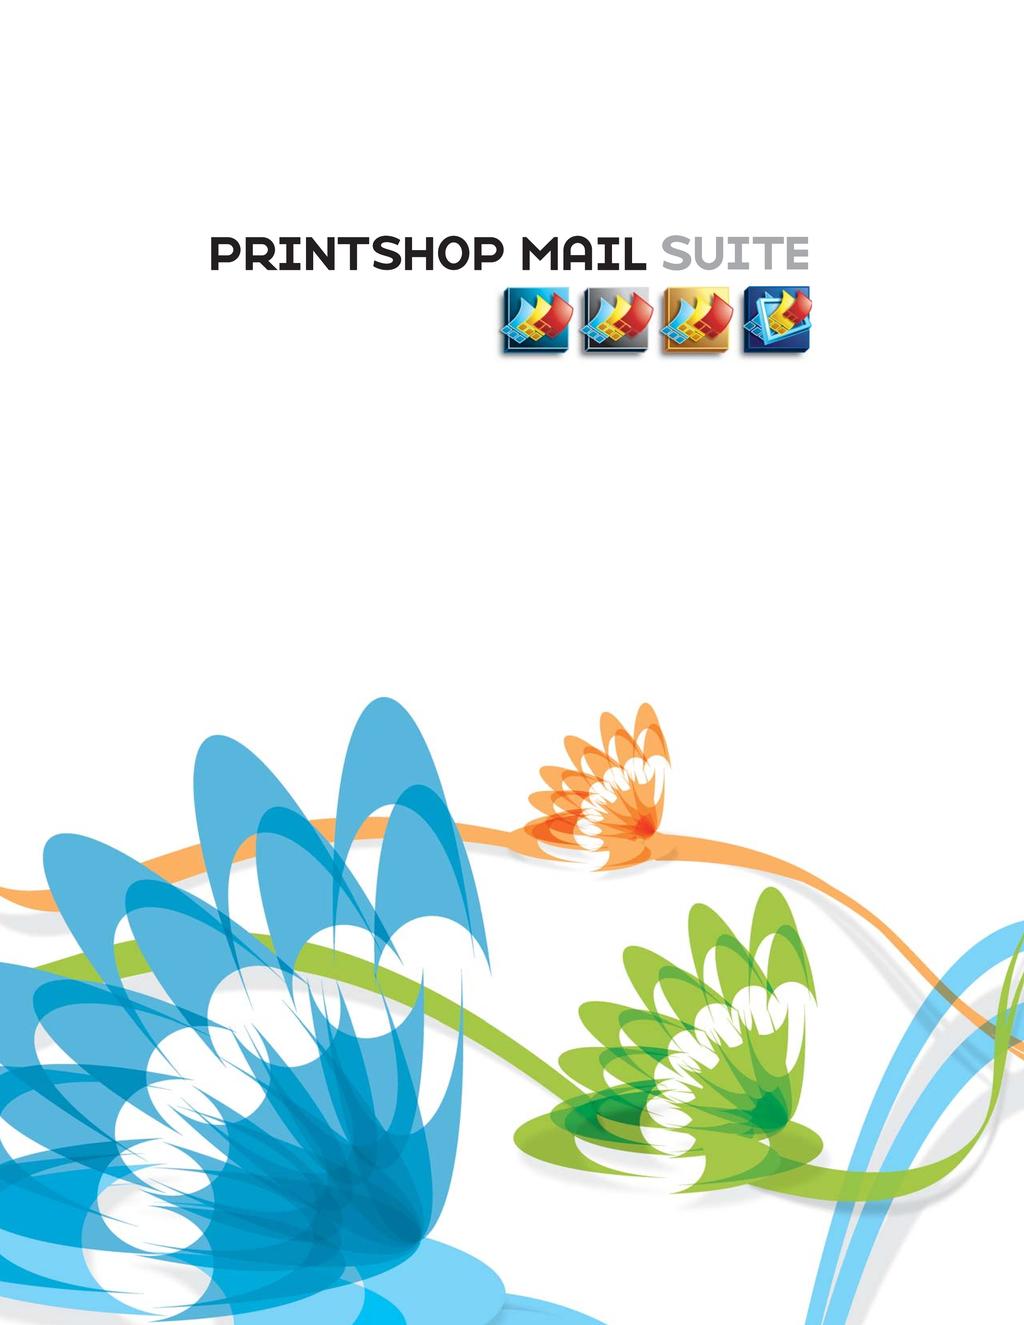 PrintShop Mail